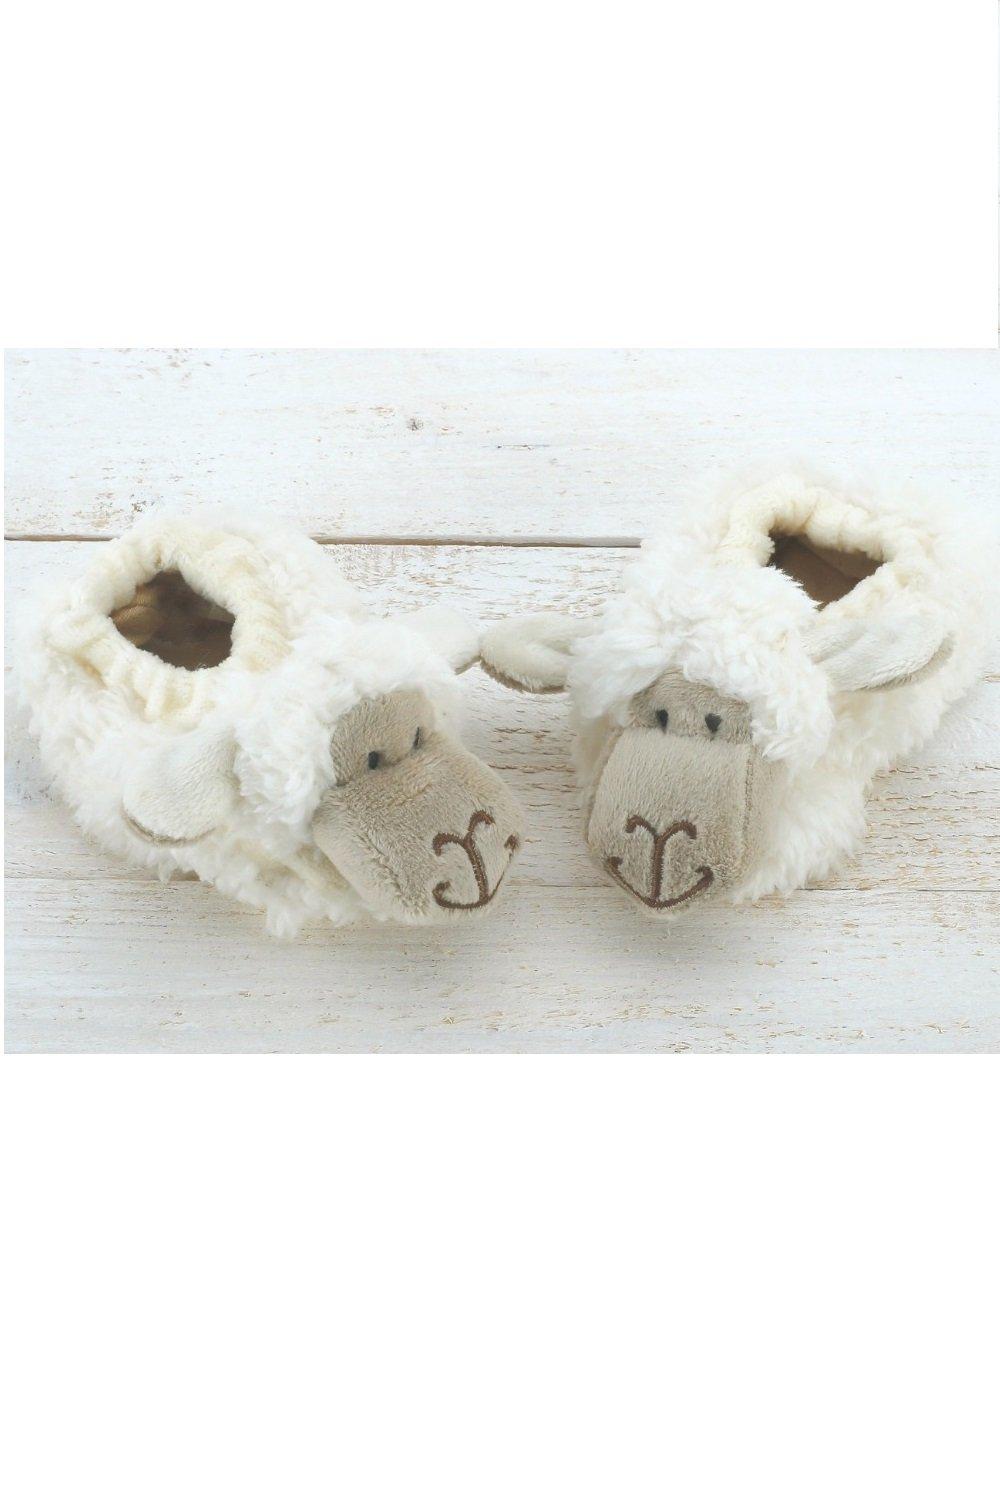 Детские тапочки из овечьей шерсти 0-6 месяцев Jomanda, белый носки из овечьей шерсти детские 6 24 месяца